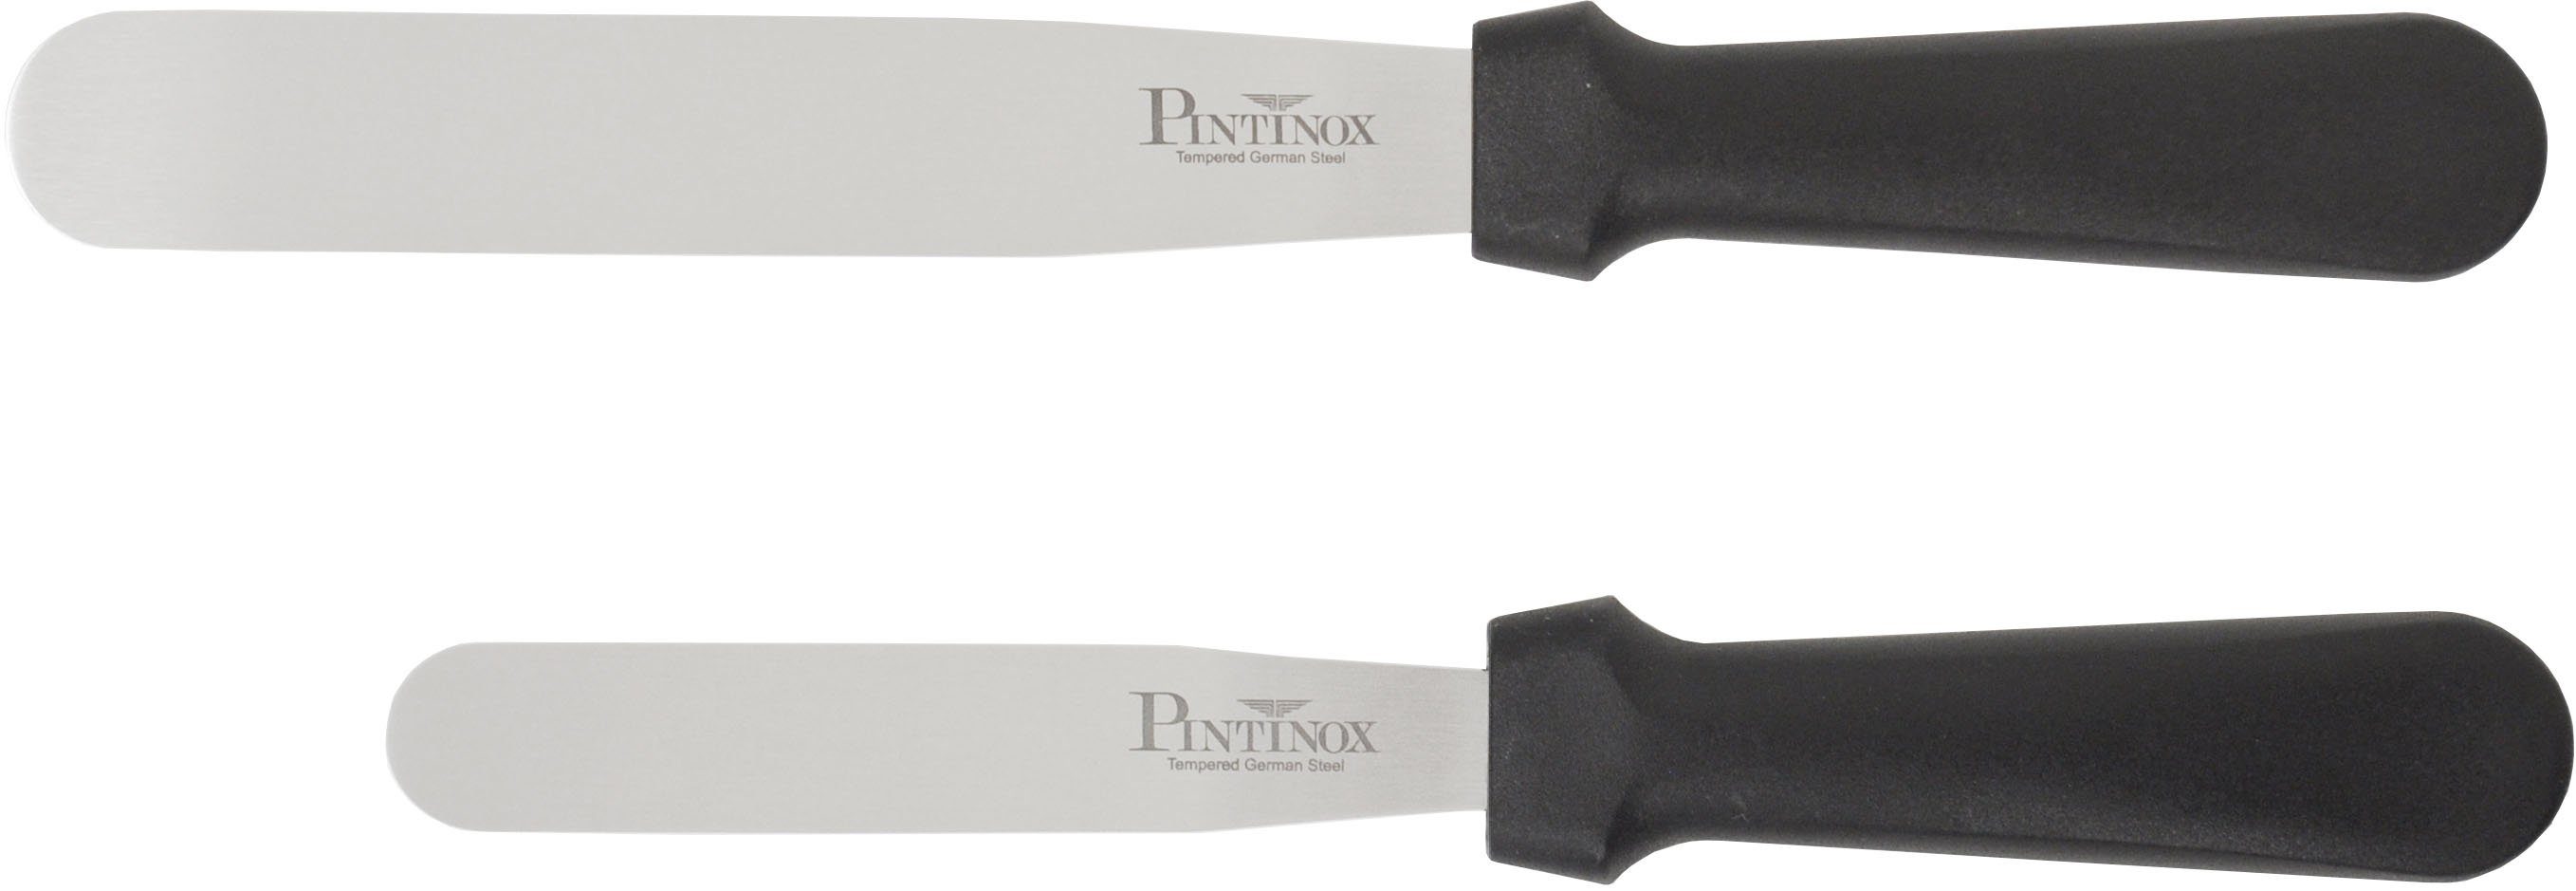 PINTINOX Streichpalette Professional, Spatel Edelstahl, 15,9 spülmaschinengeeinget, 1 1 cm Spatel 10,5cm